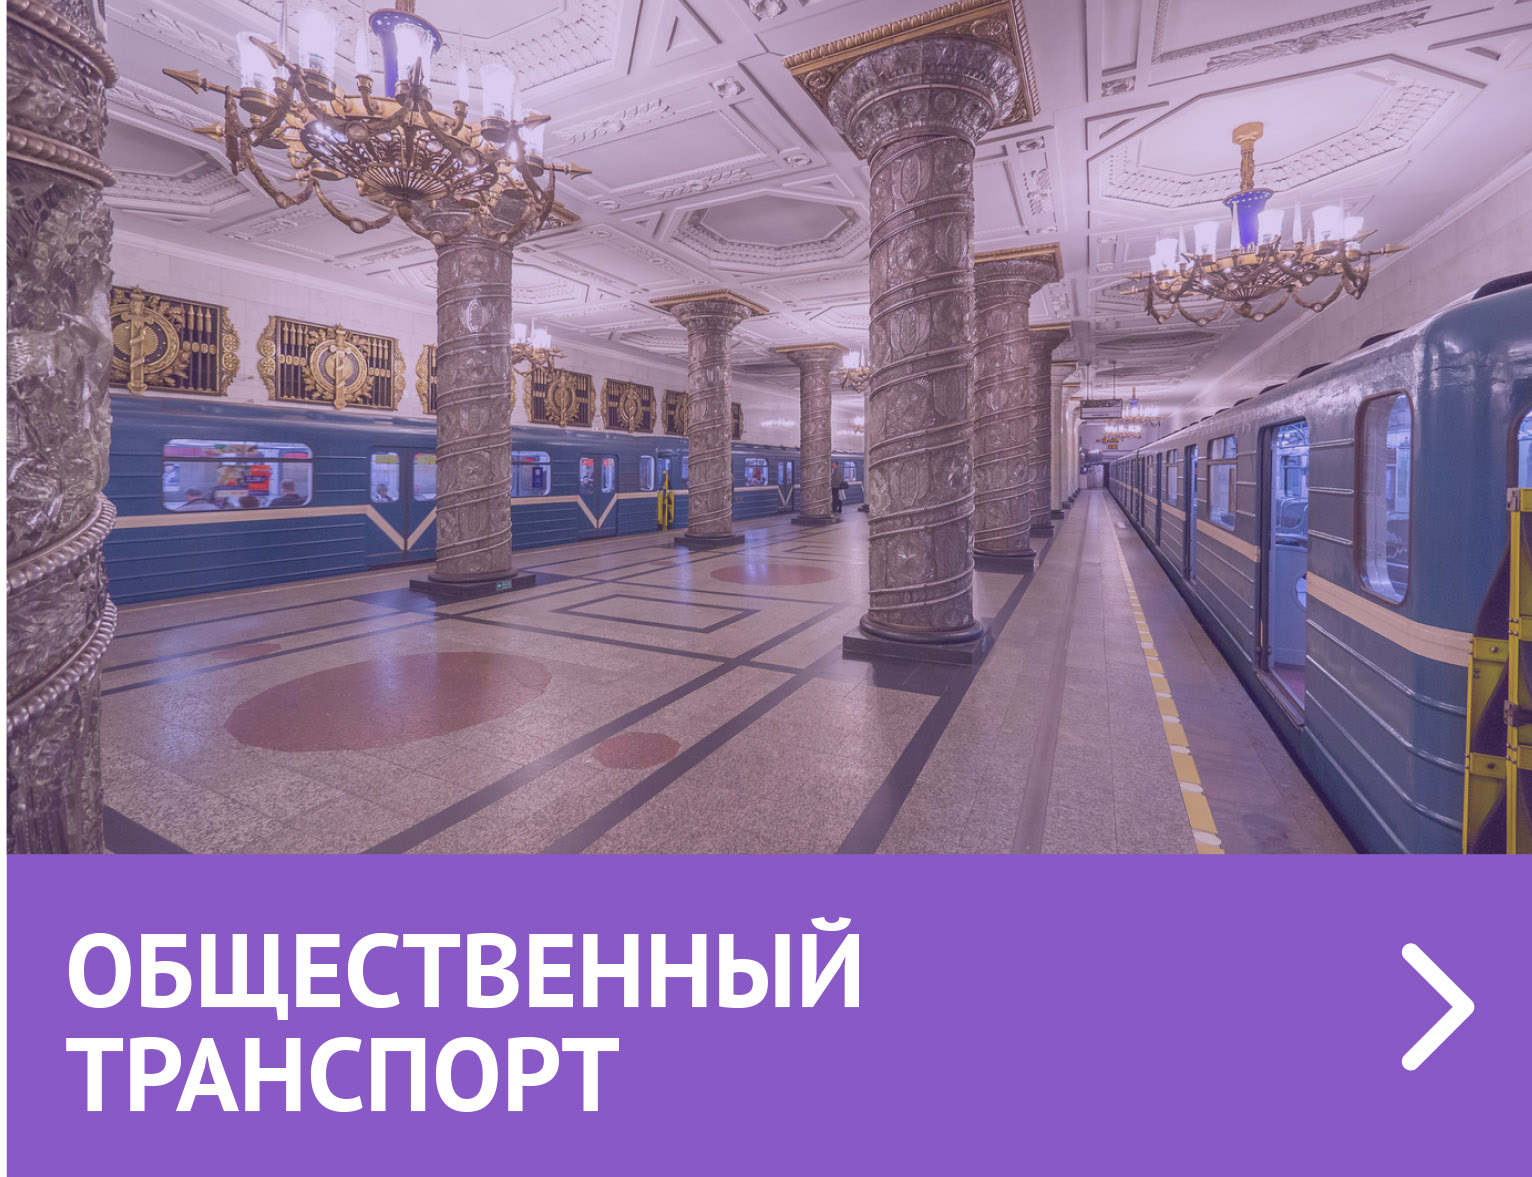 Общественный транспорт Санкт-Петербурга: как пользоваться